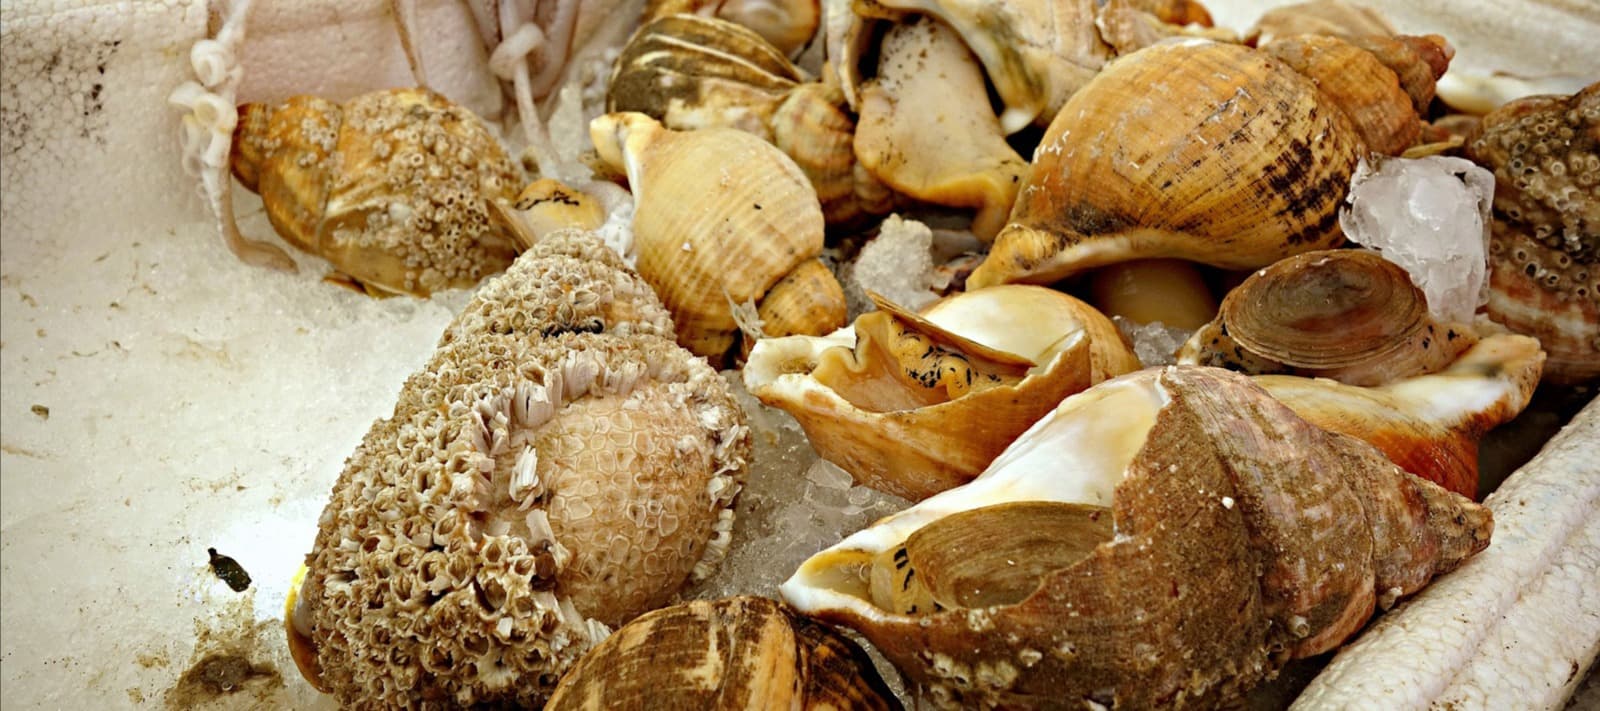 Фото новости: "В России начал расти спрос на деликатесного моллюска трубача"